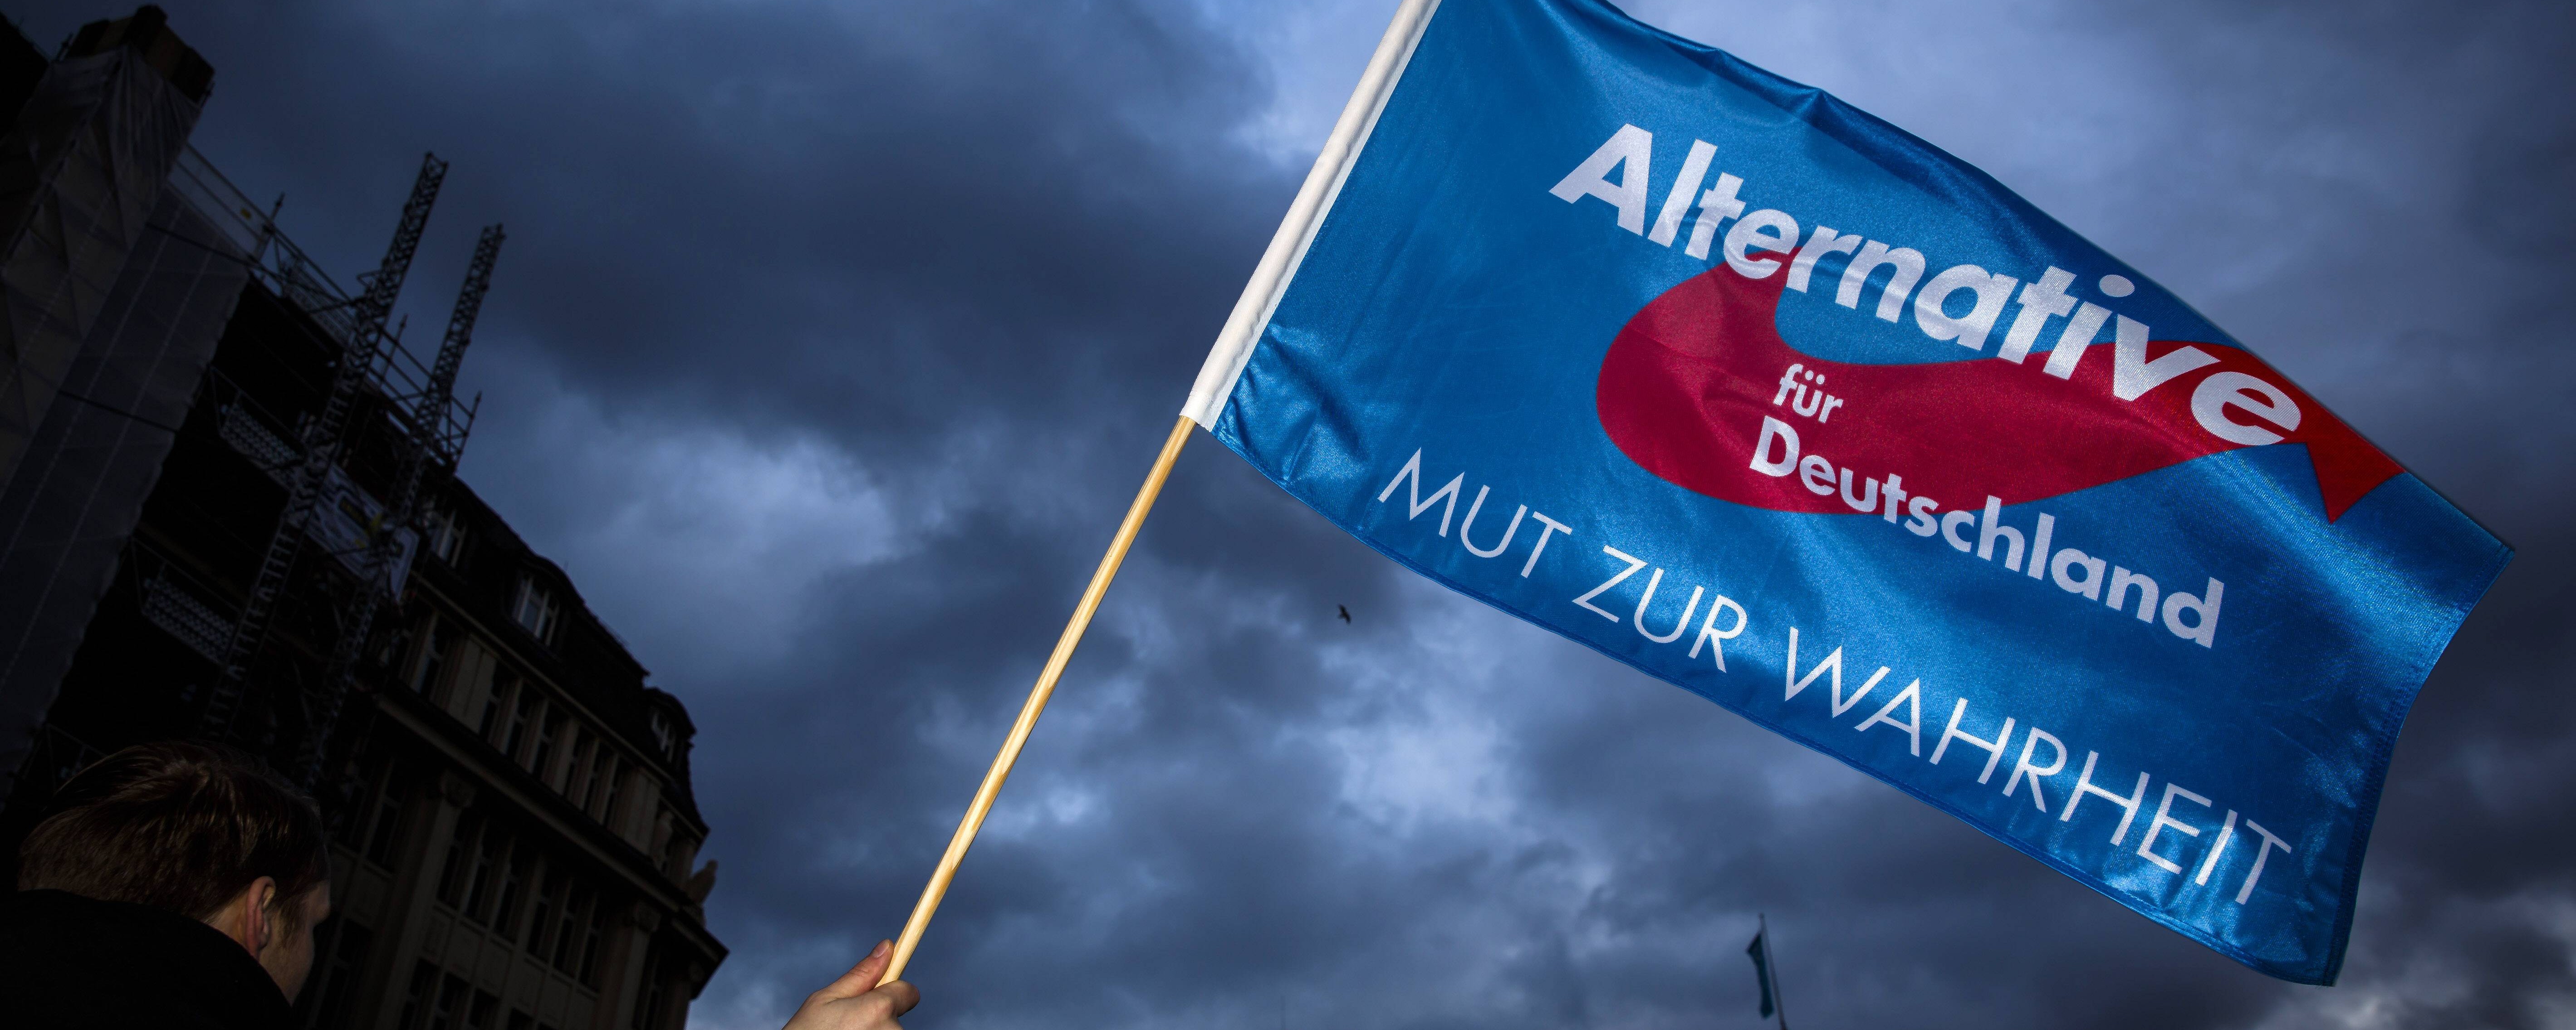 Männer bedrohen ein Flüchtlingsheim in Schleswig-Holstein und schwenken  dabei AfD-Fahnen